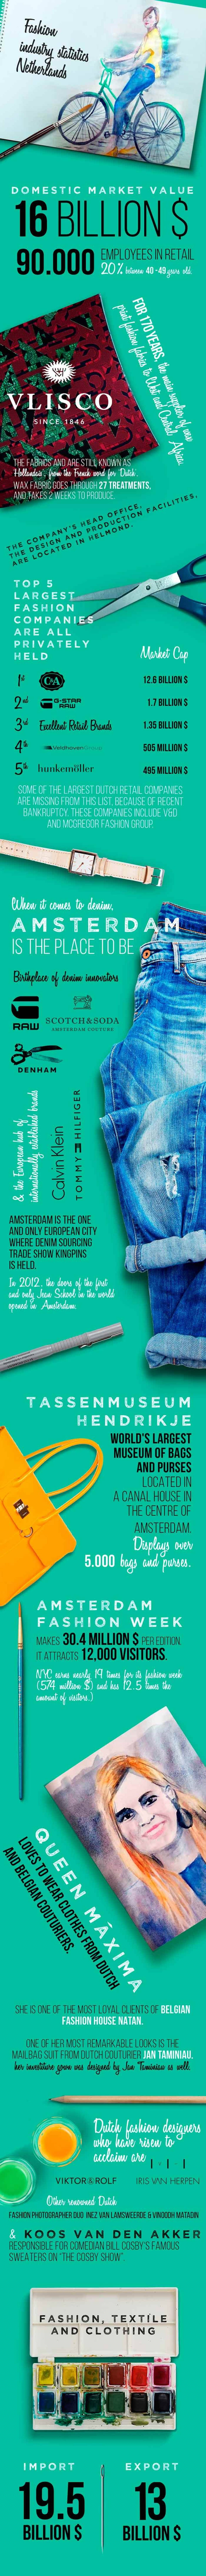 Estadísticas sobre la industria de la moda – Serie de infografías. Parte 5: Holanda